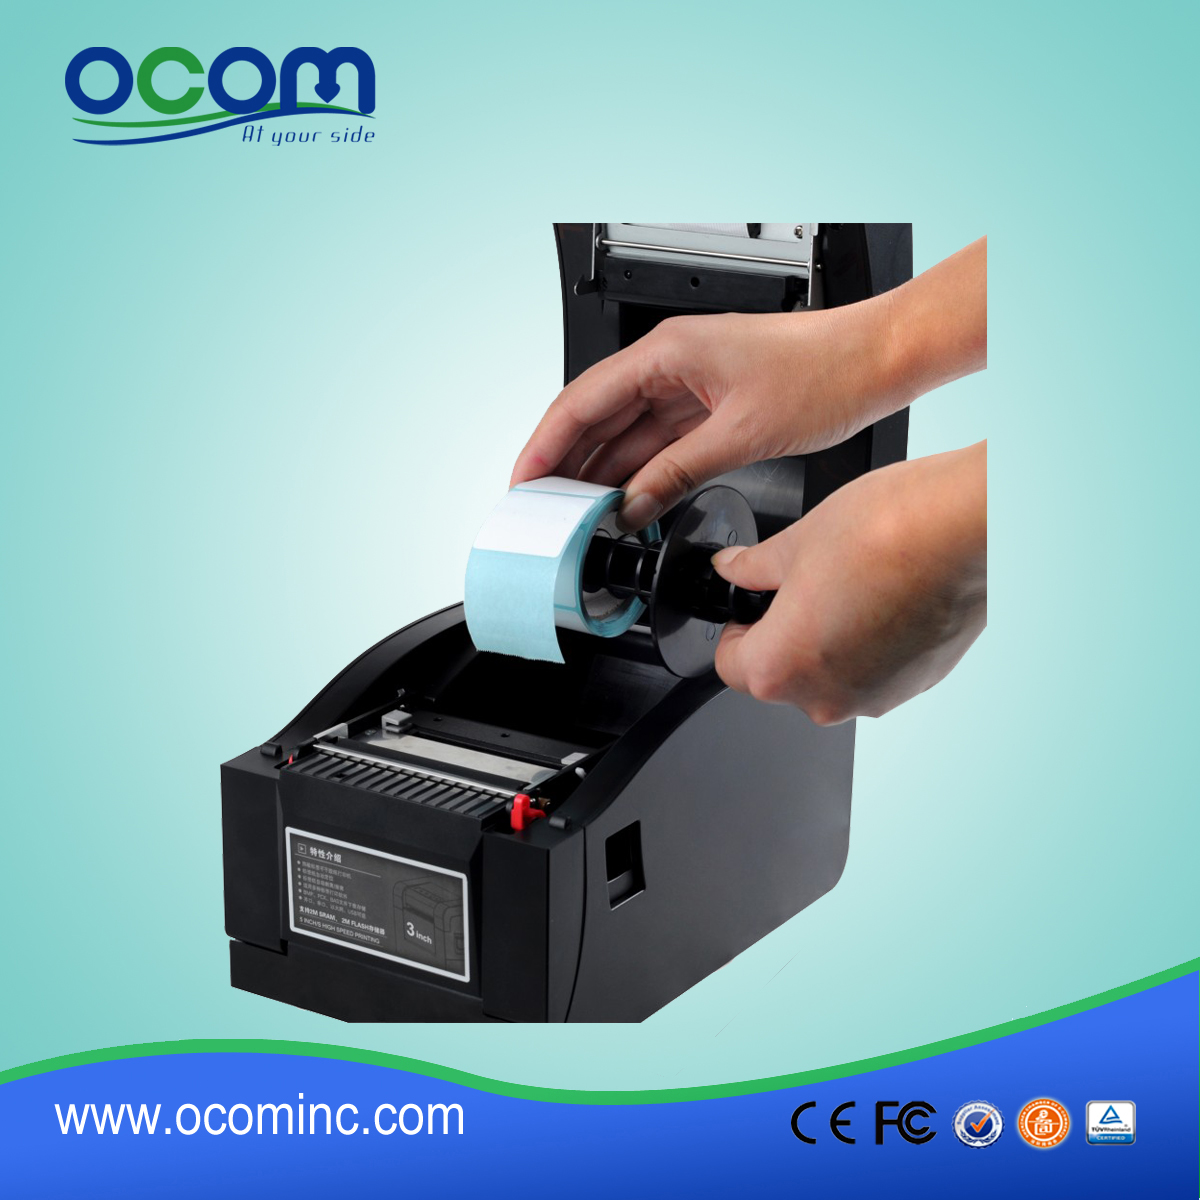 OCBP-005: Coût Airprint concurrentiel code à barres thermique direct imprimante d'étiquettes